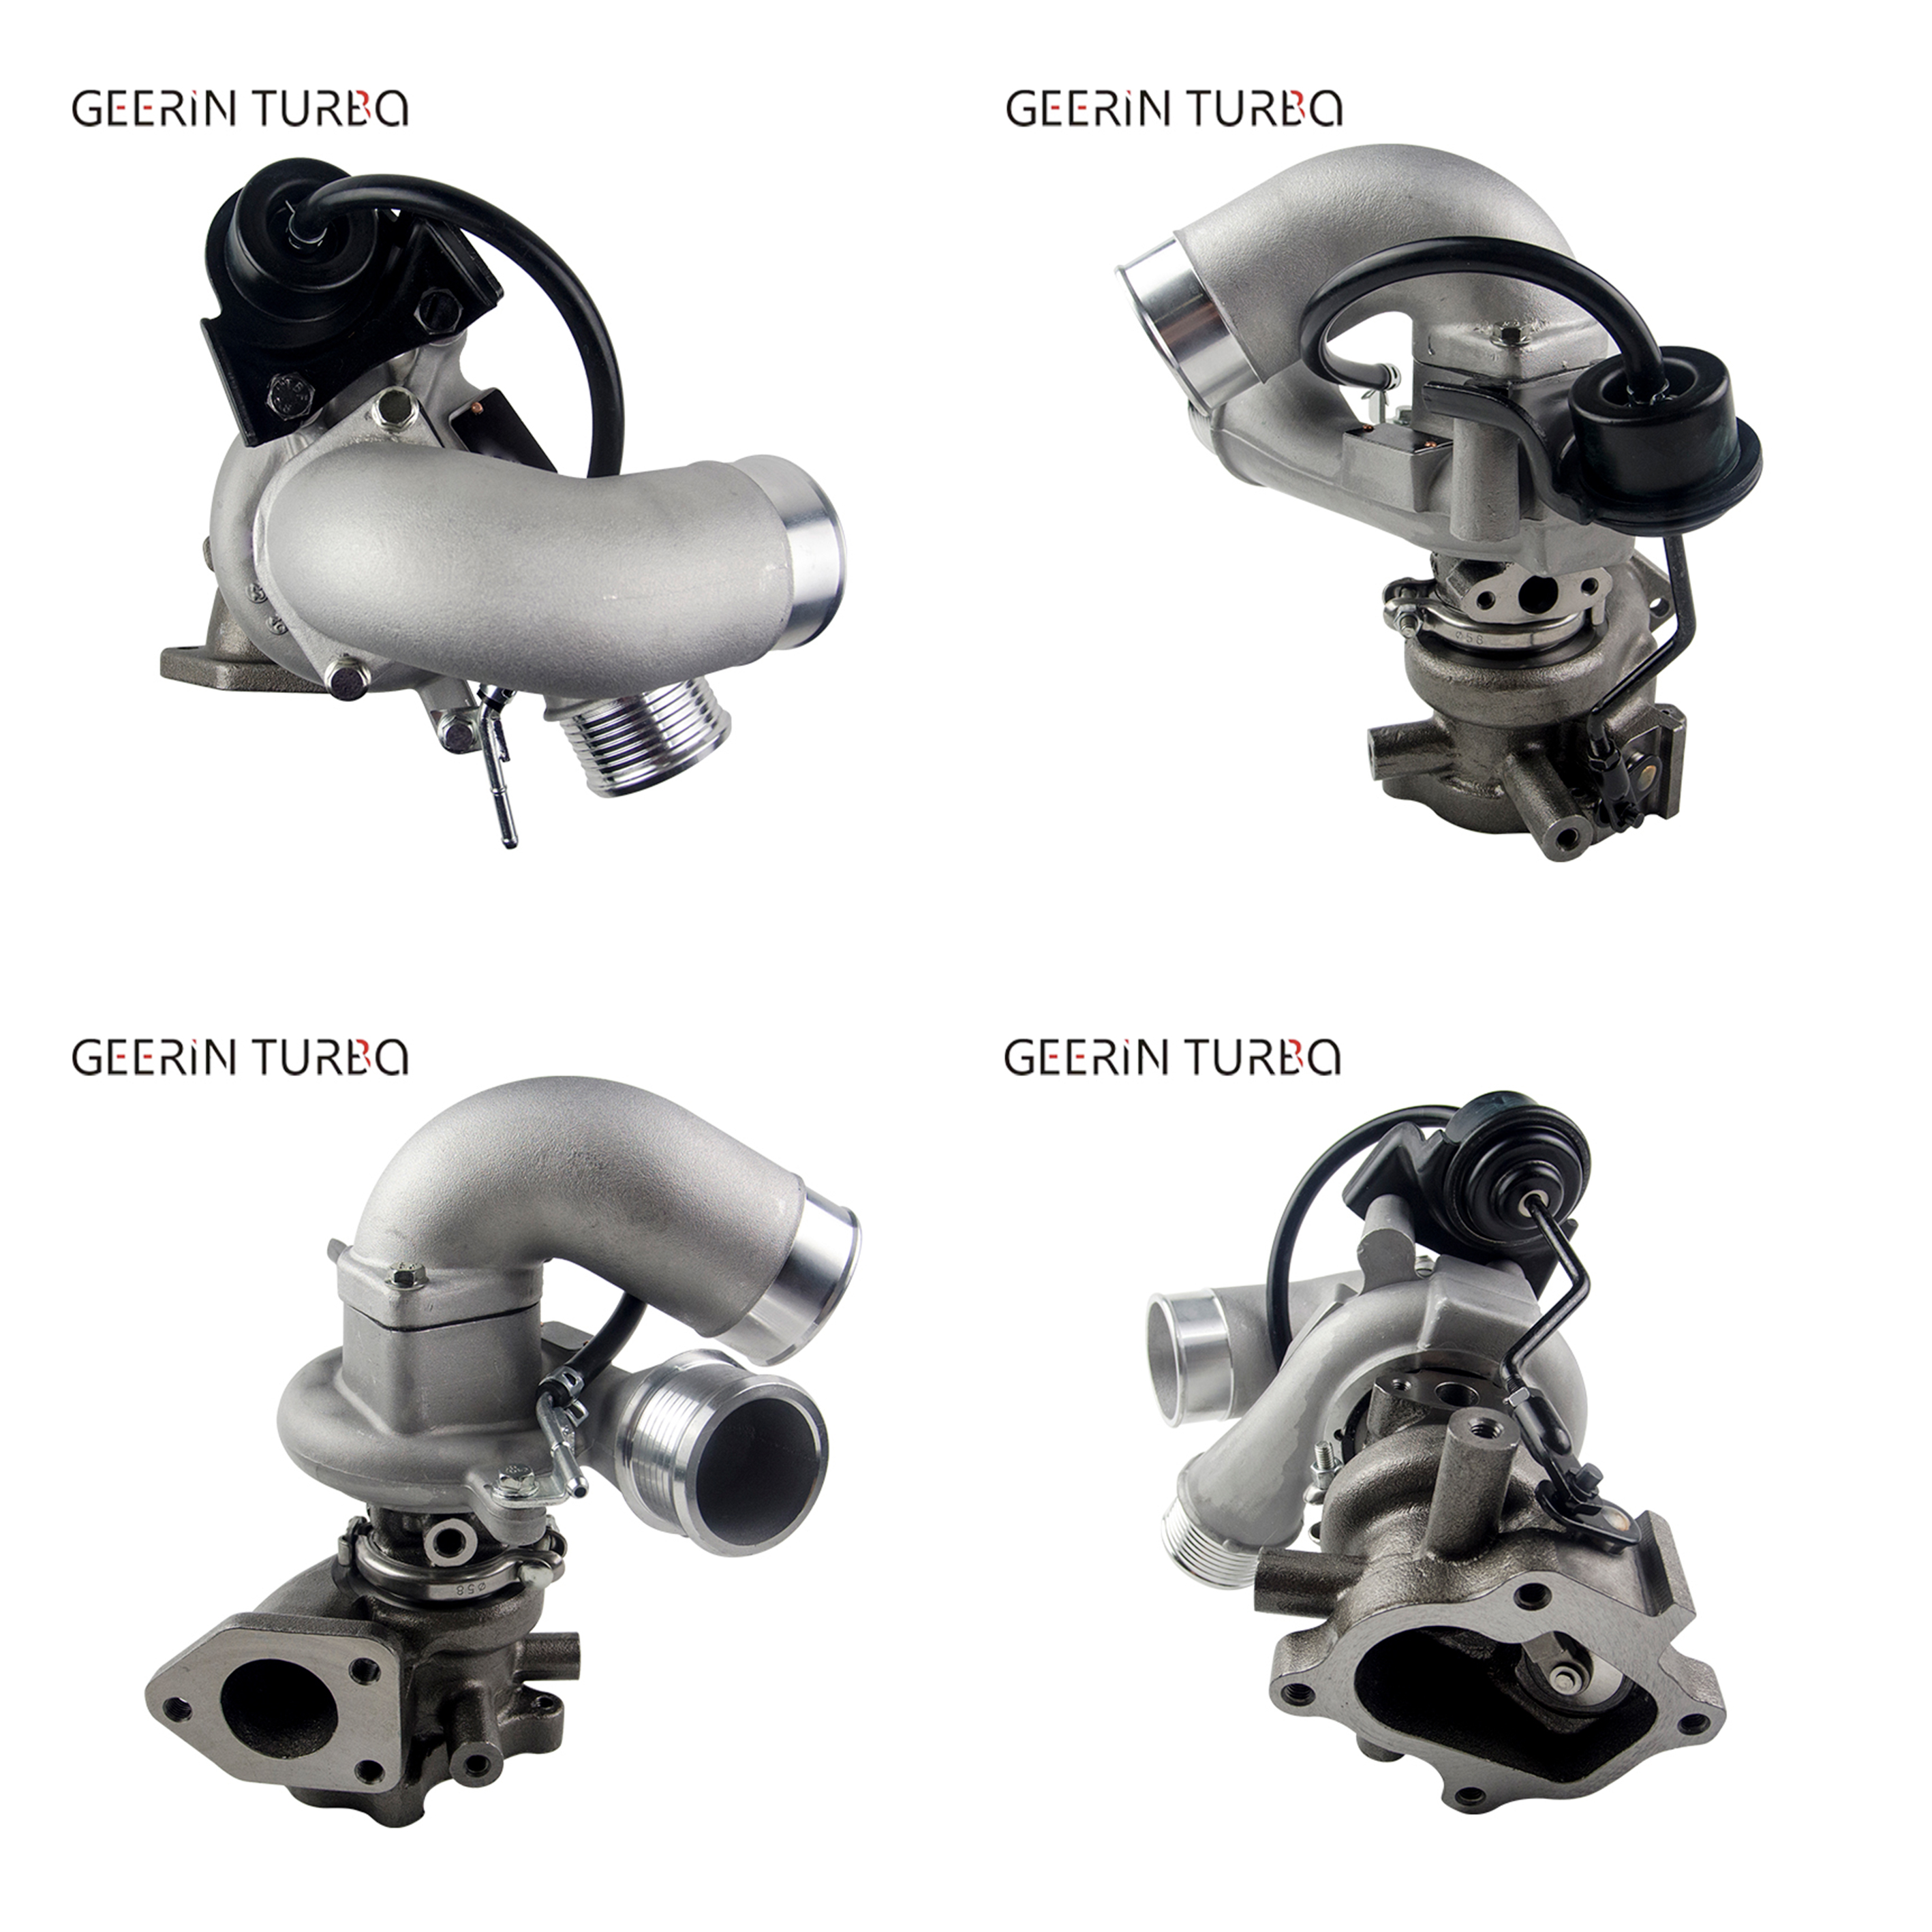 Cumpărați TD03L4 49590-45607 seturi de încărcător turbo pentru KIA Bongo,TD03L4 49590-45607 seturi de încărcător turbo pentru KIA Bongo Preț,TD03L4 49590-45607 seturi de încărcător turbo pentru KIA Bongo Marci,TD03L4 49590-45607 seturi de încărcător turbo pentru KIA Bongo Producător,TD03L4 49590-45607 seturi de încărcător turbo pentru KIA Bongo Citate,TD03L4 49590-45607 seturi de încărcător turbo pentru KIA Bongo Companie